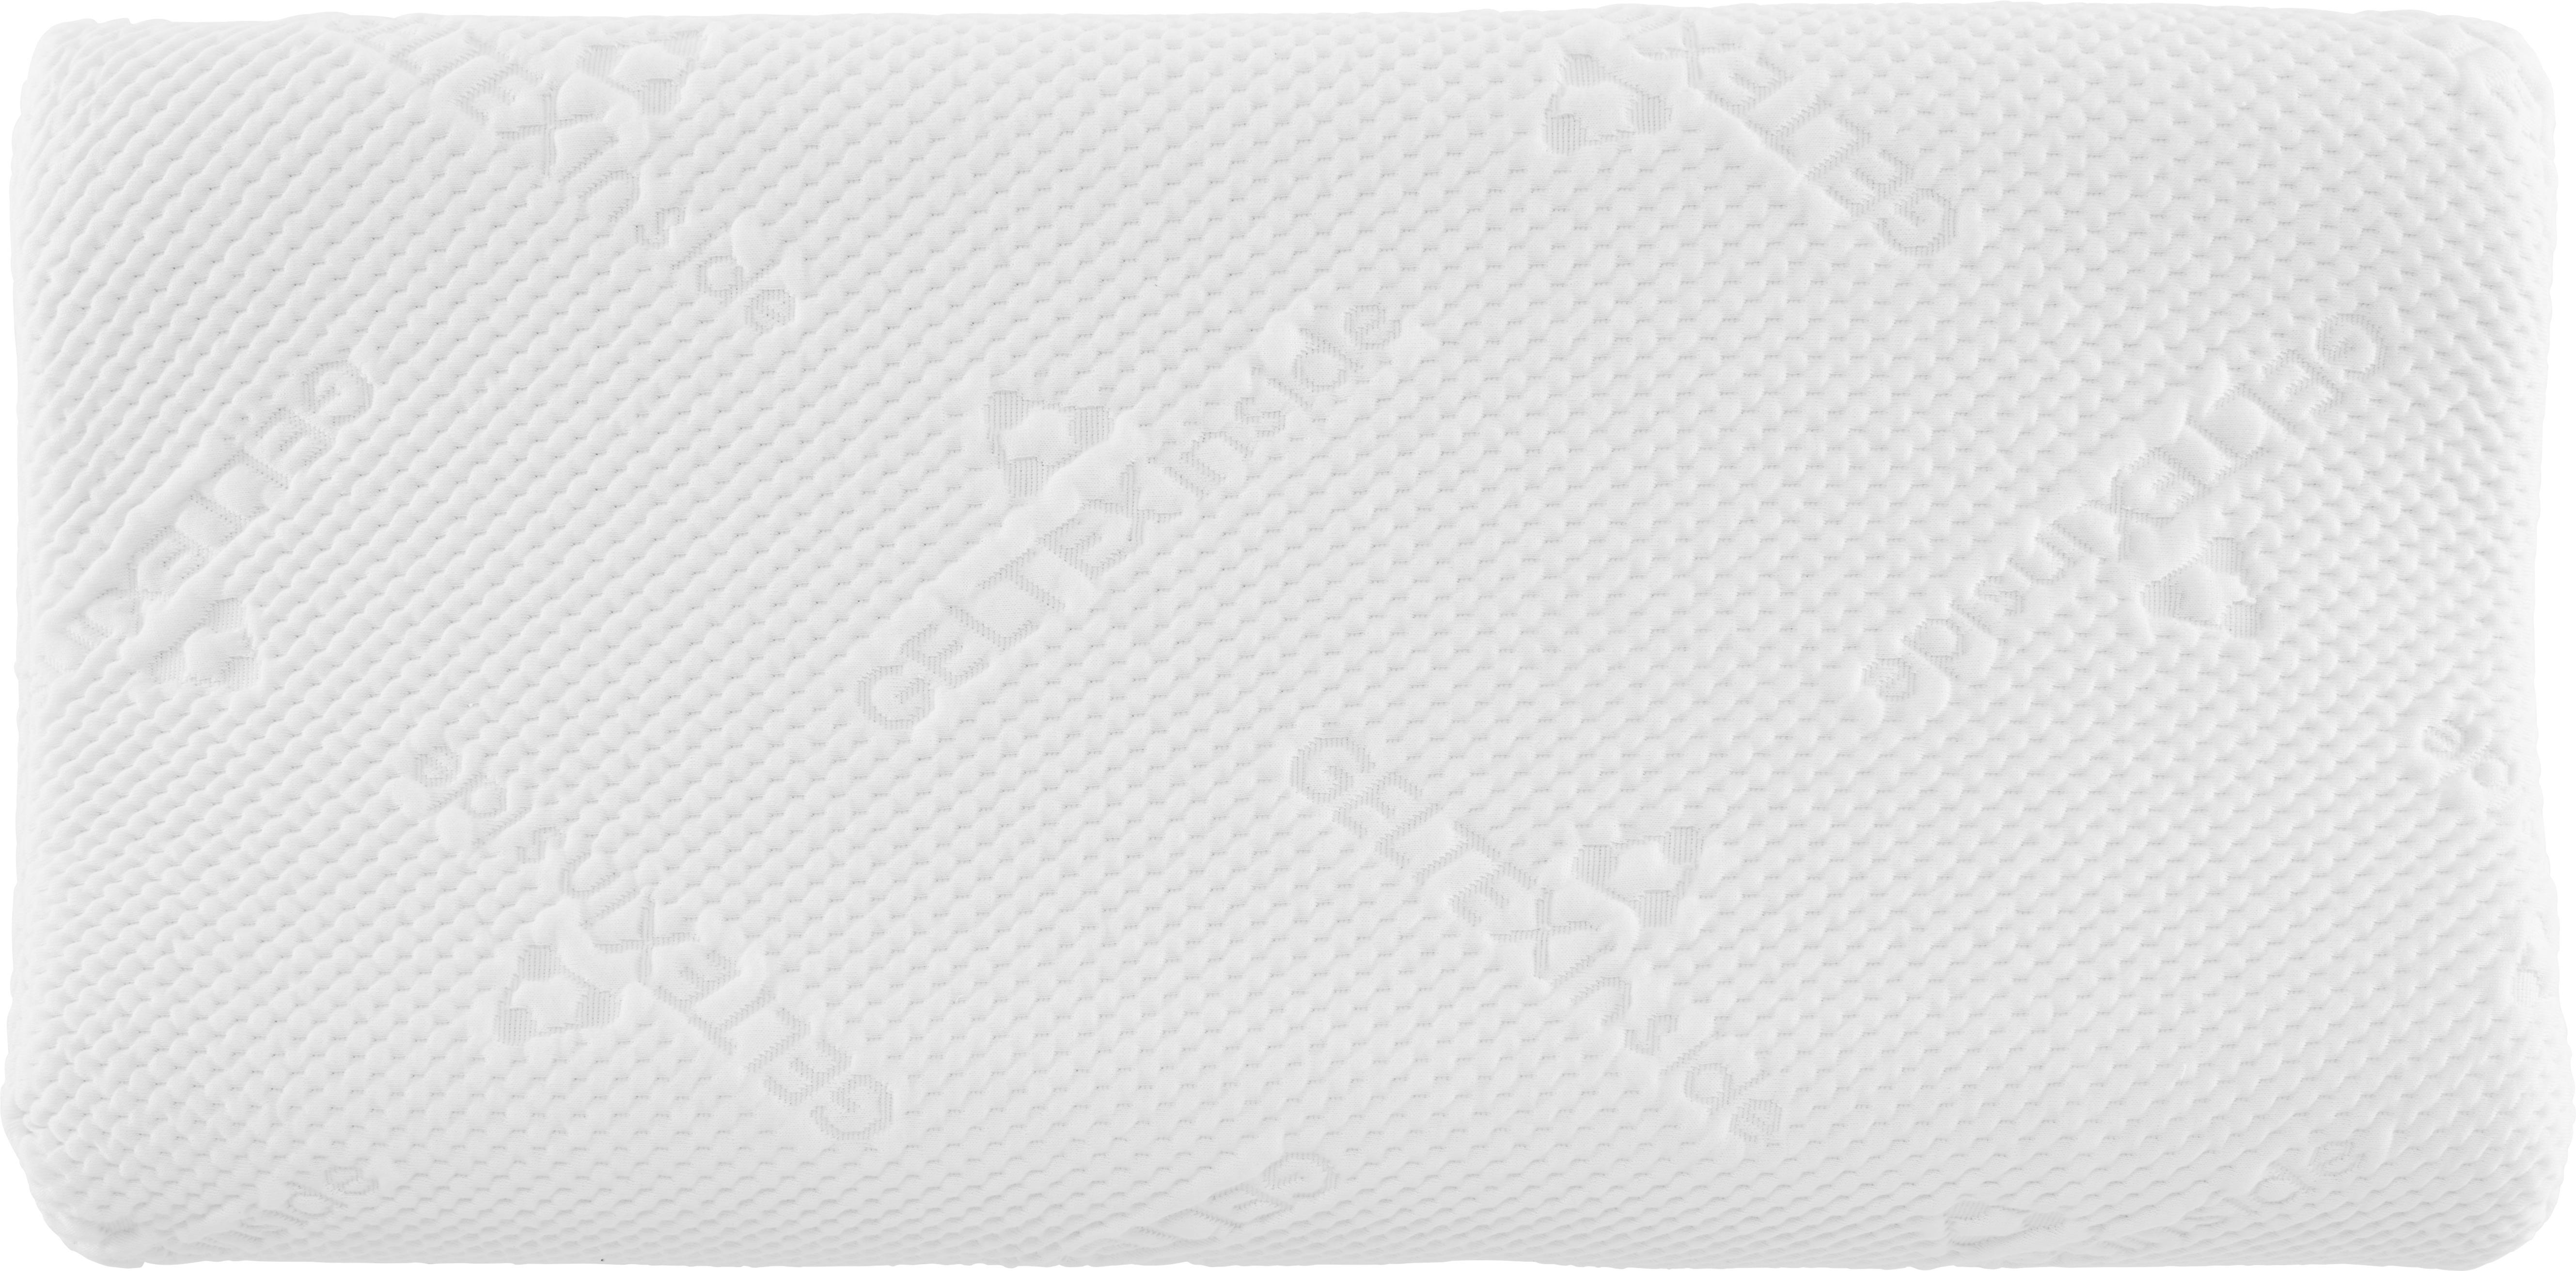 NACKENSTÜTZKISSEN 70/33 cm  - Weiß, Basics, Textil (70/33cm) - Sembella